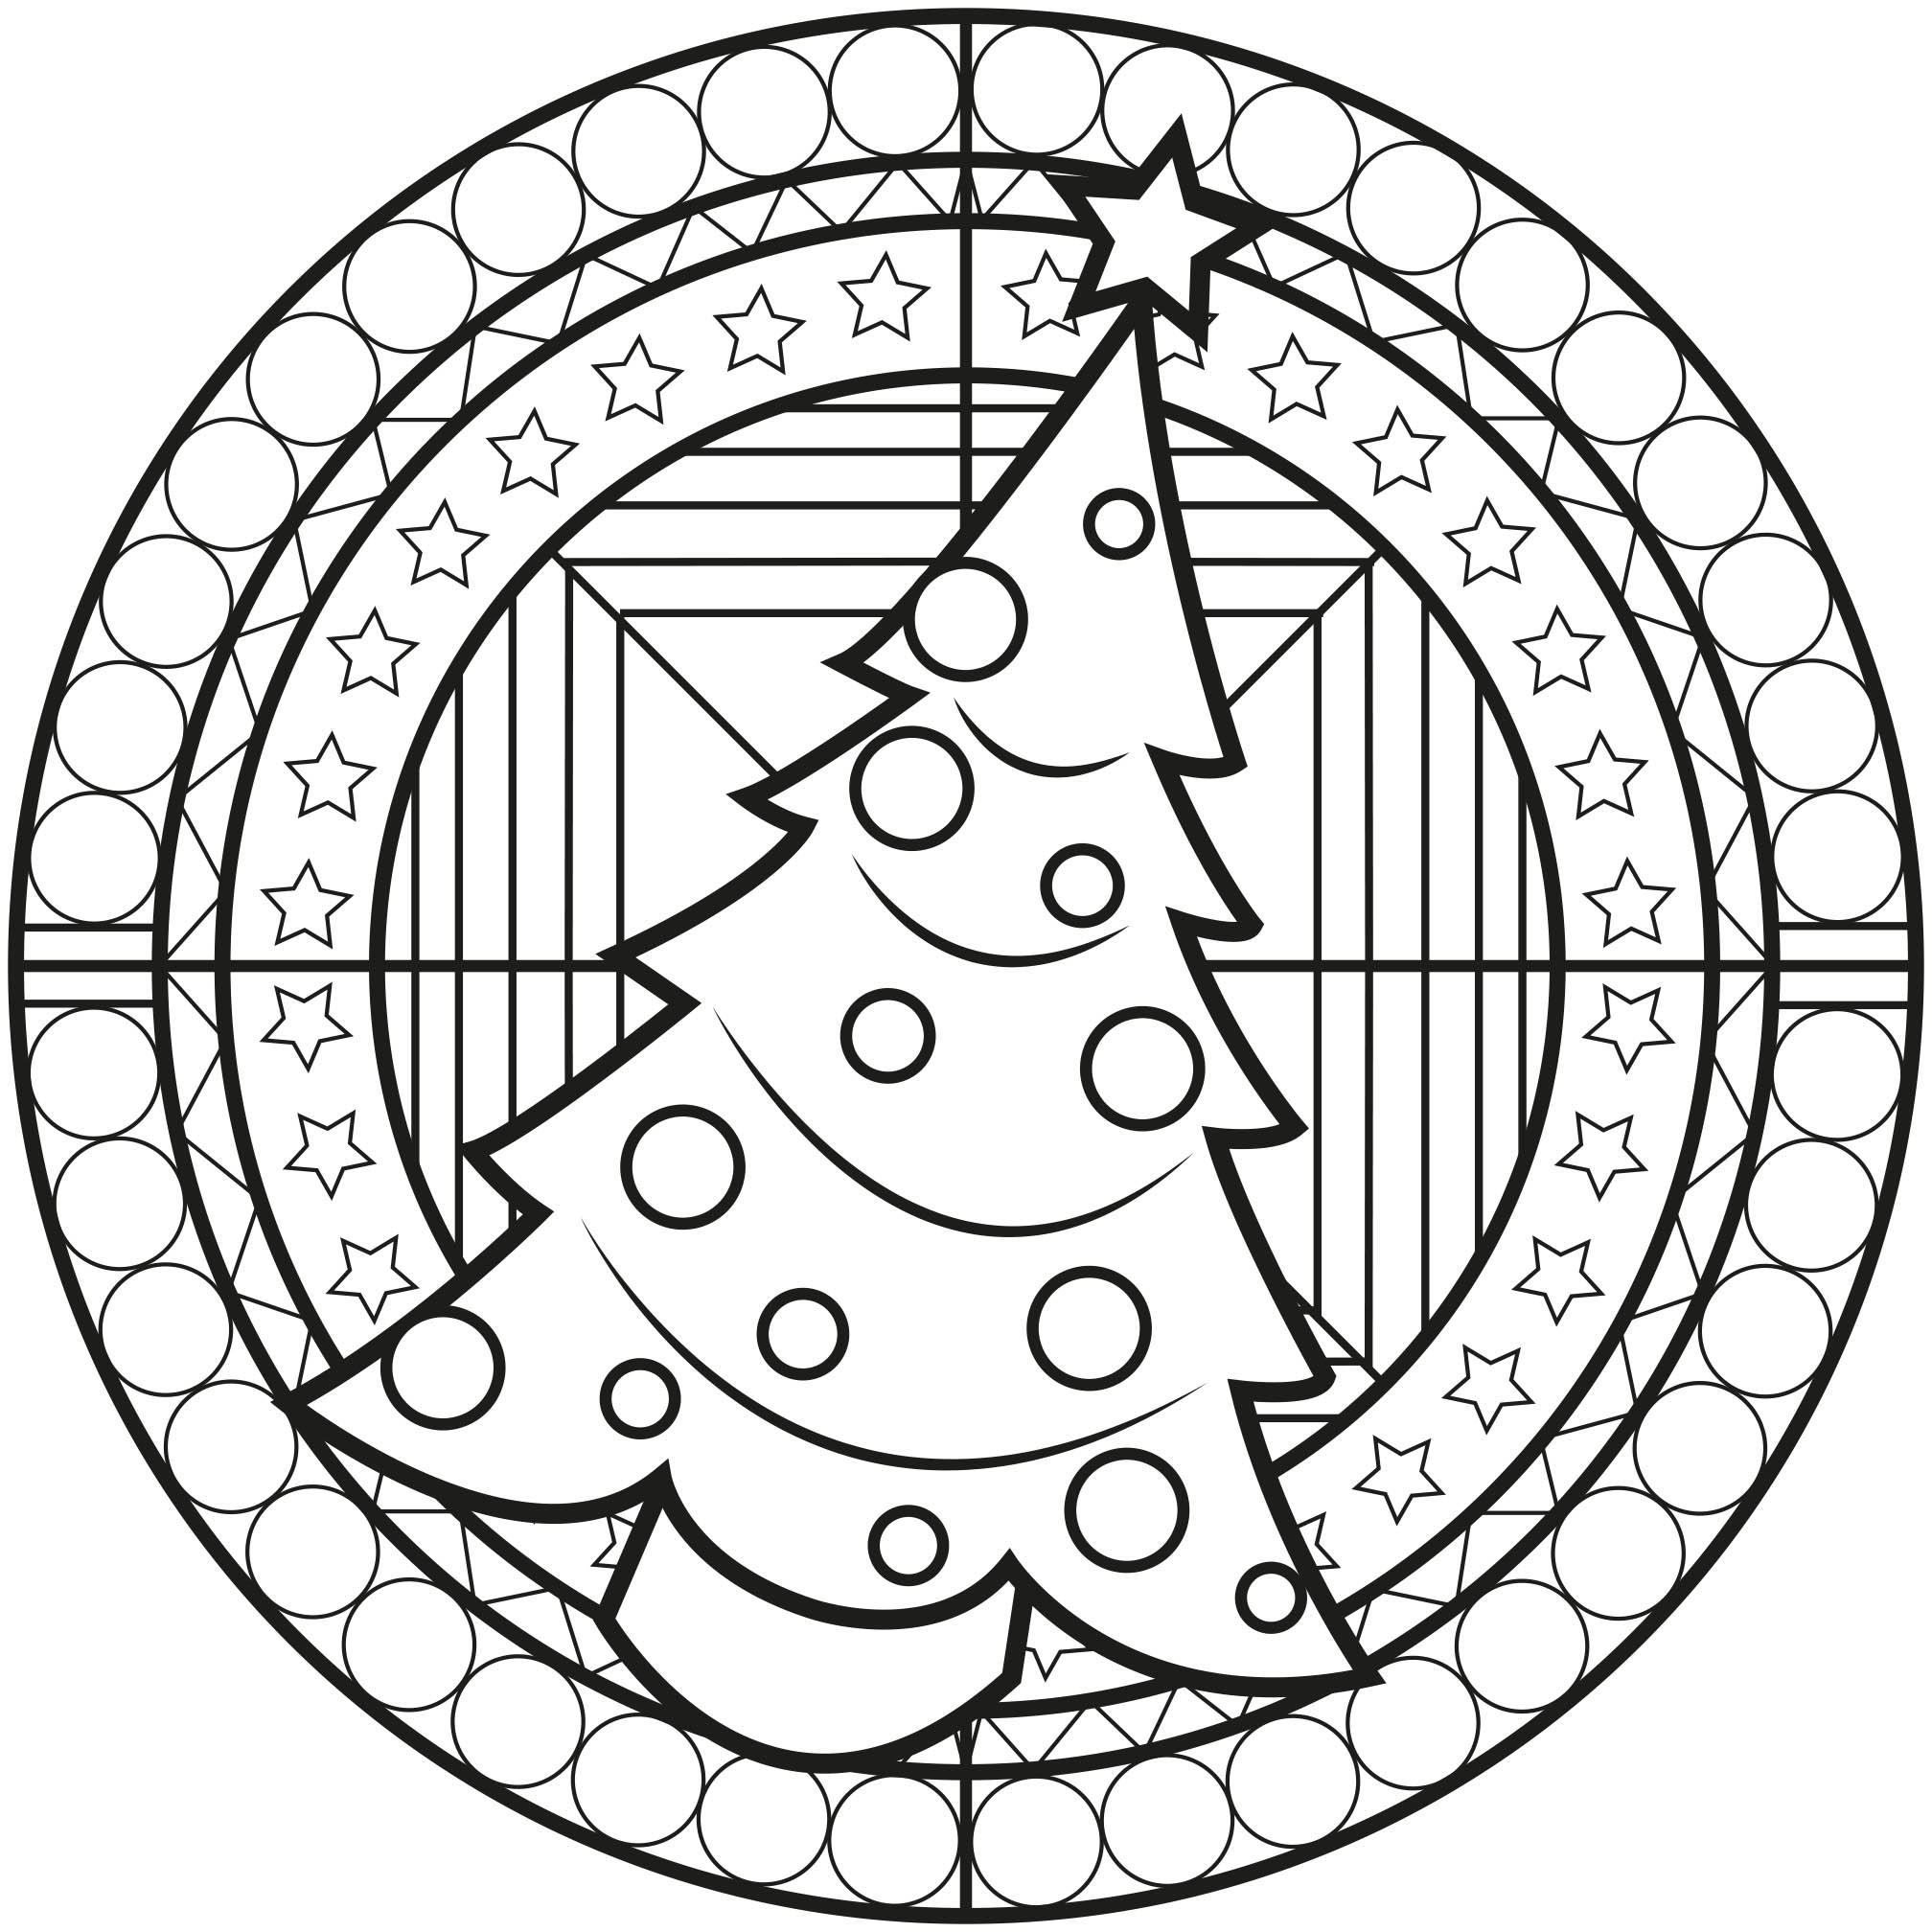 ¡Llega la Navidad! Entra en ambiente con este mandala navideño que contiene un gran Árbol de Navidad en el centro, Artista : Allan